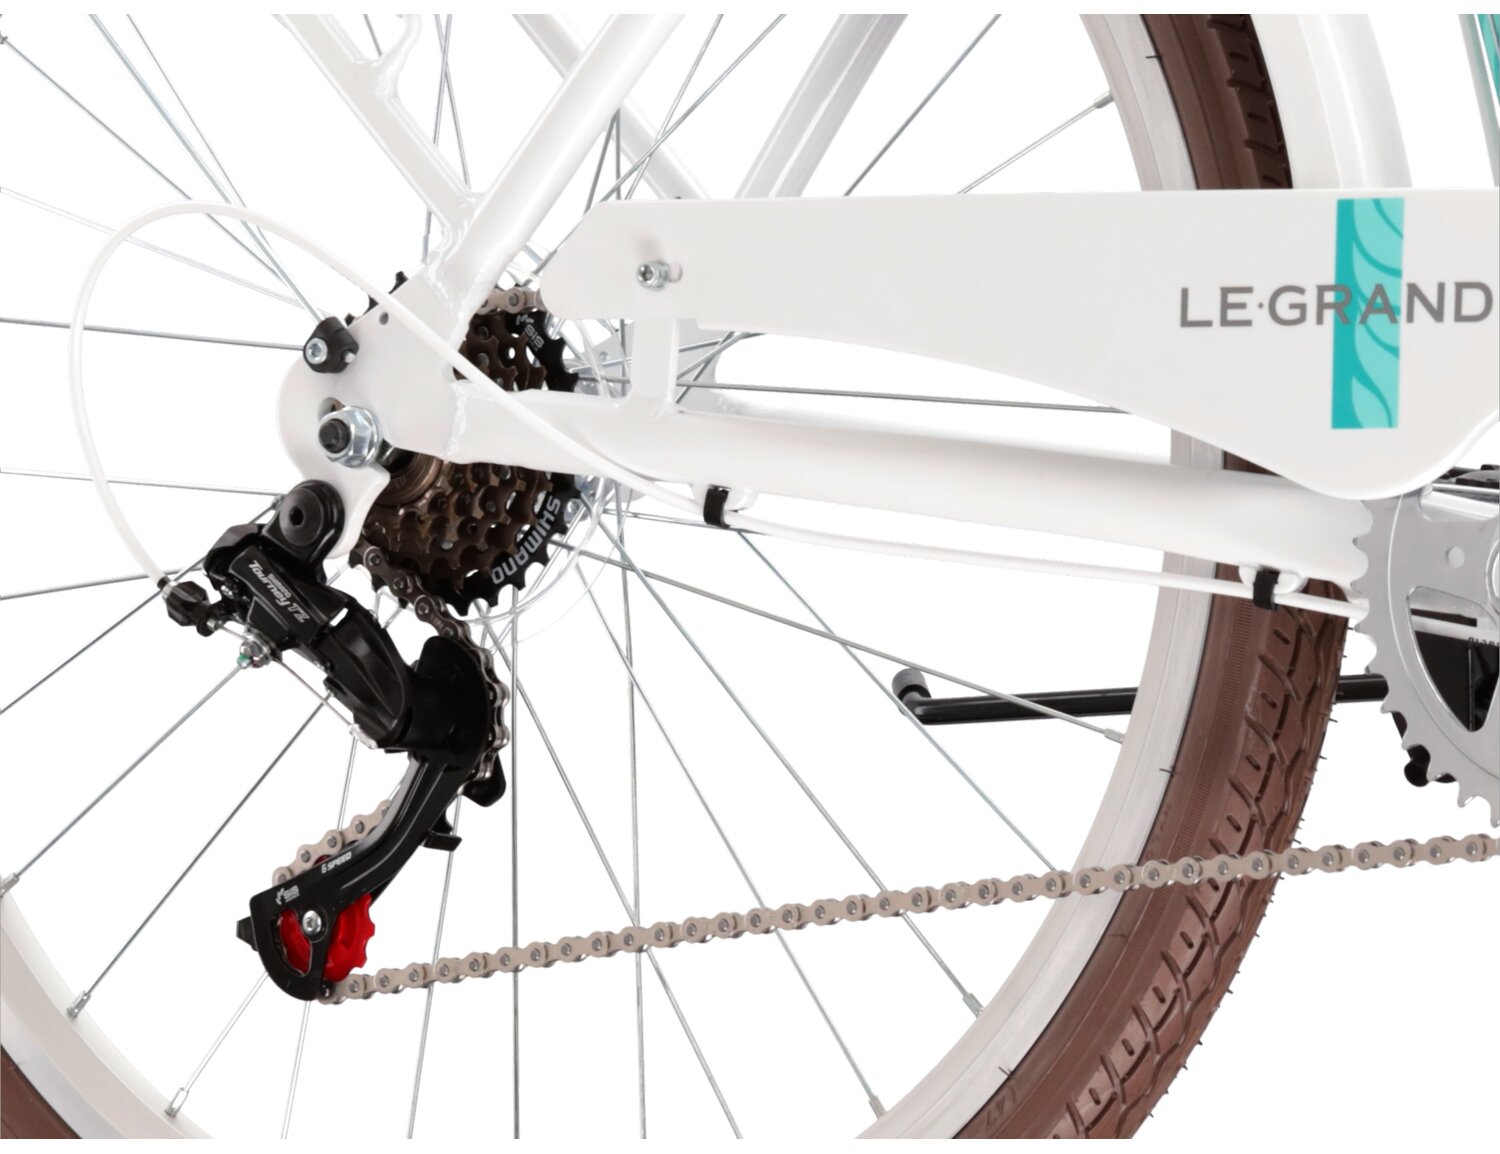  Tylna sześciobiegowa przerzutka Shimano Tourney TZ500 oraz hamulce v-brake w rowerze miejskim Le Grand Lille 1.0 